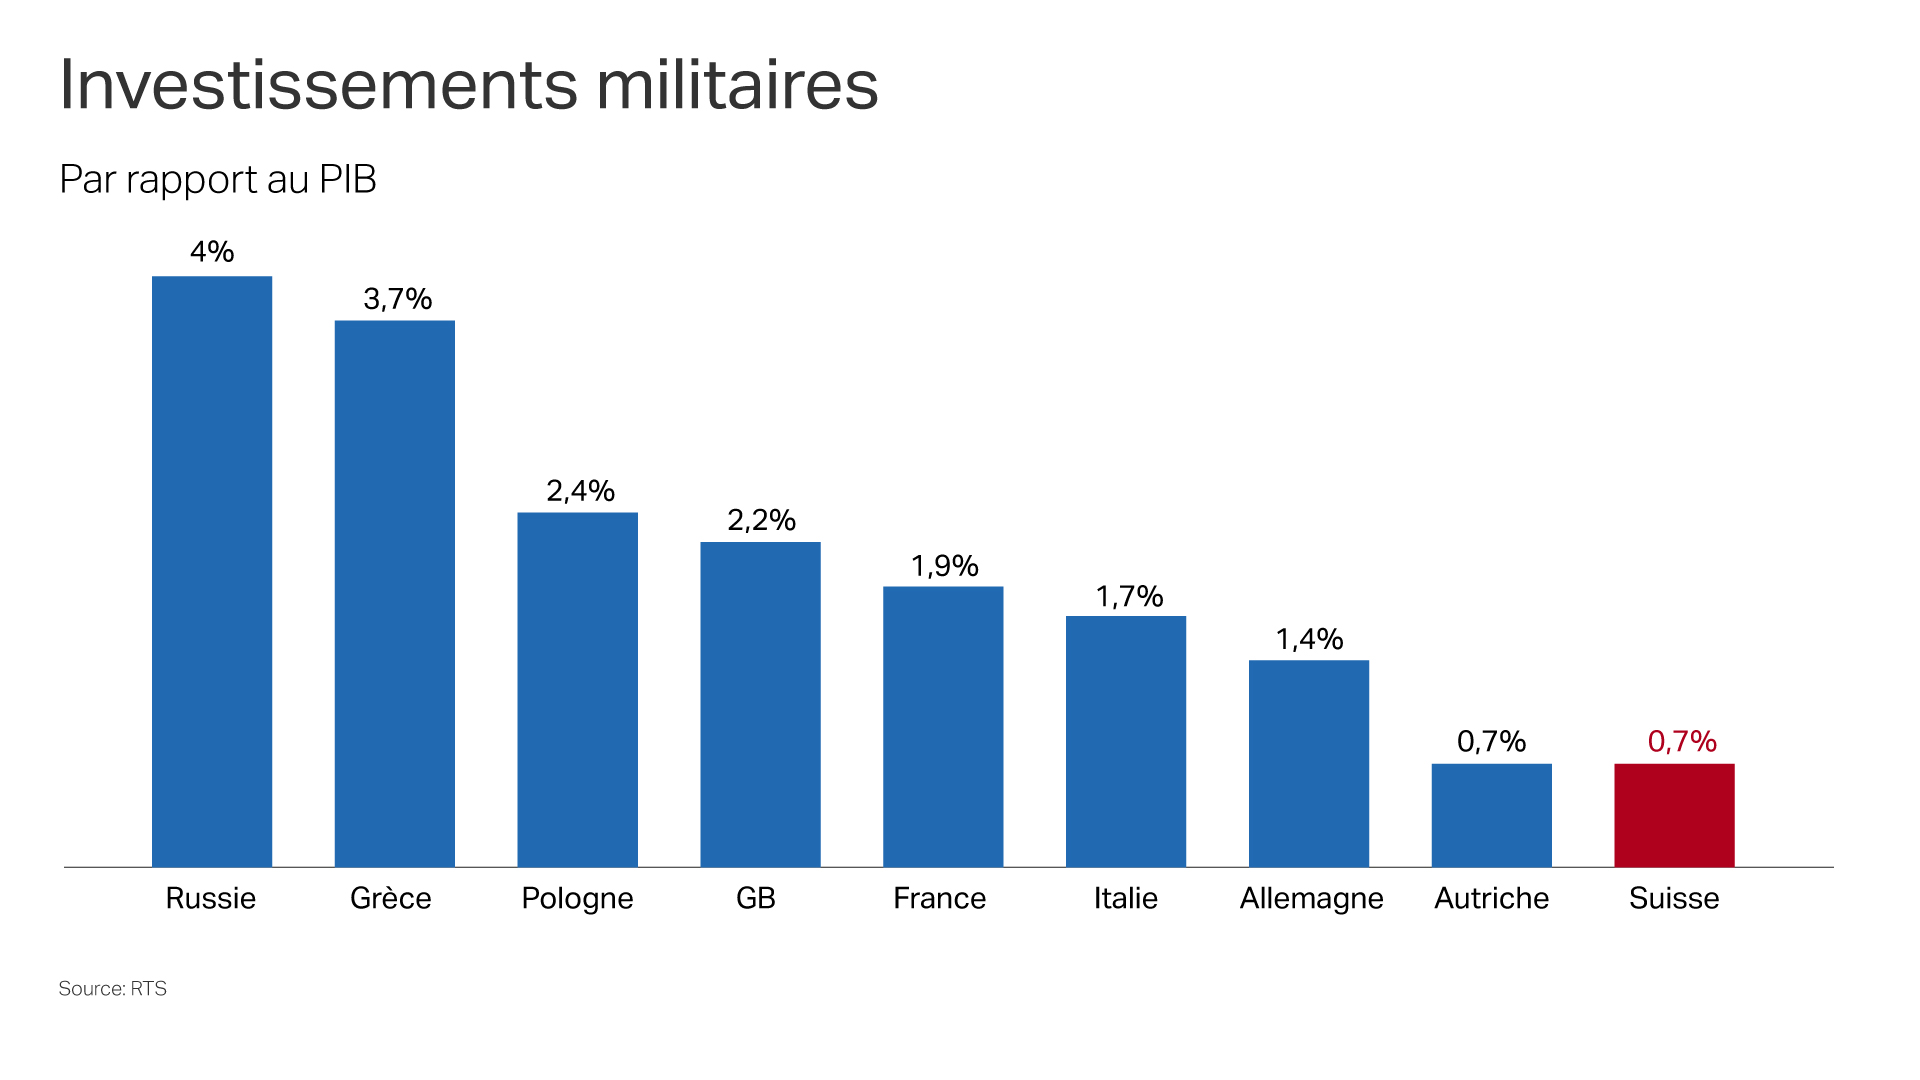 Investissements militaires en % du PIB